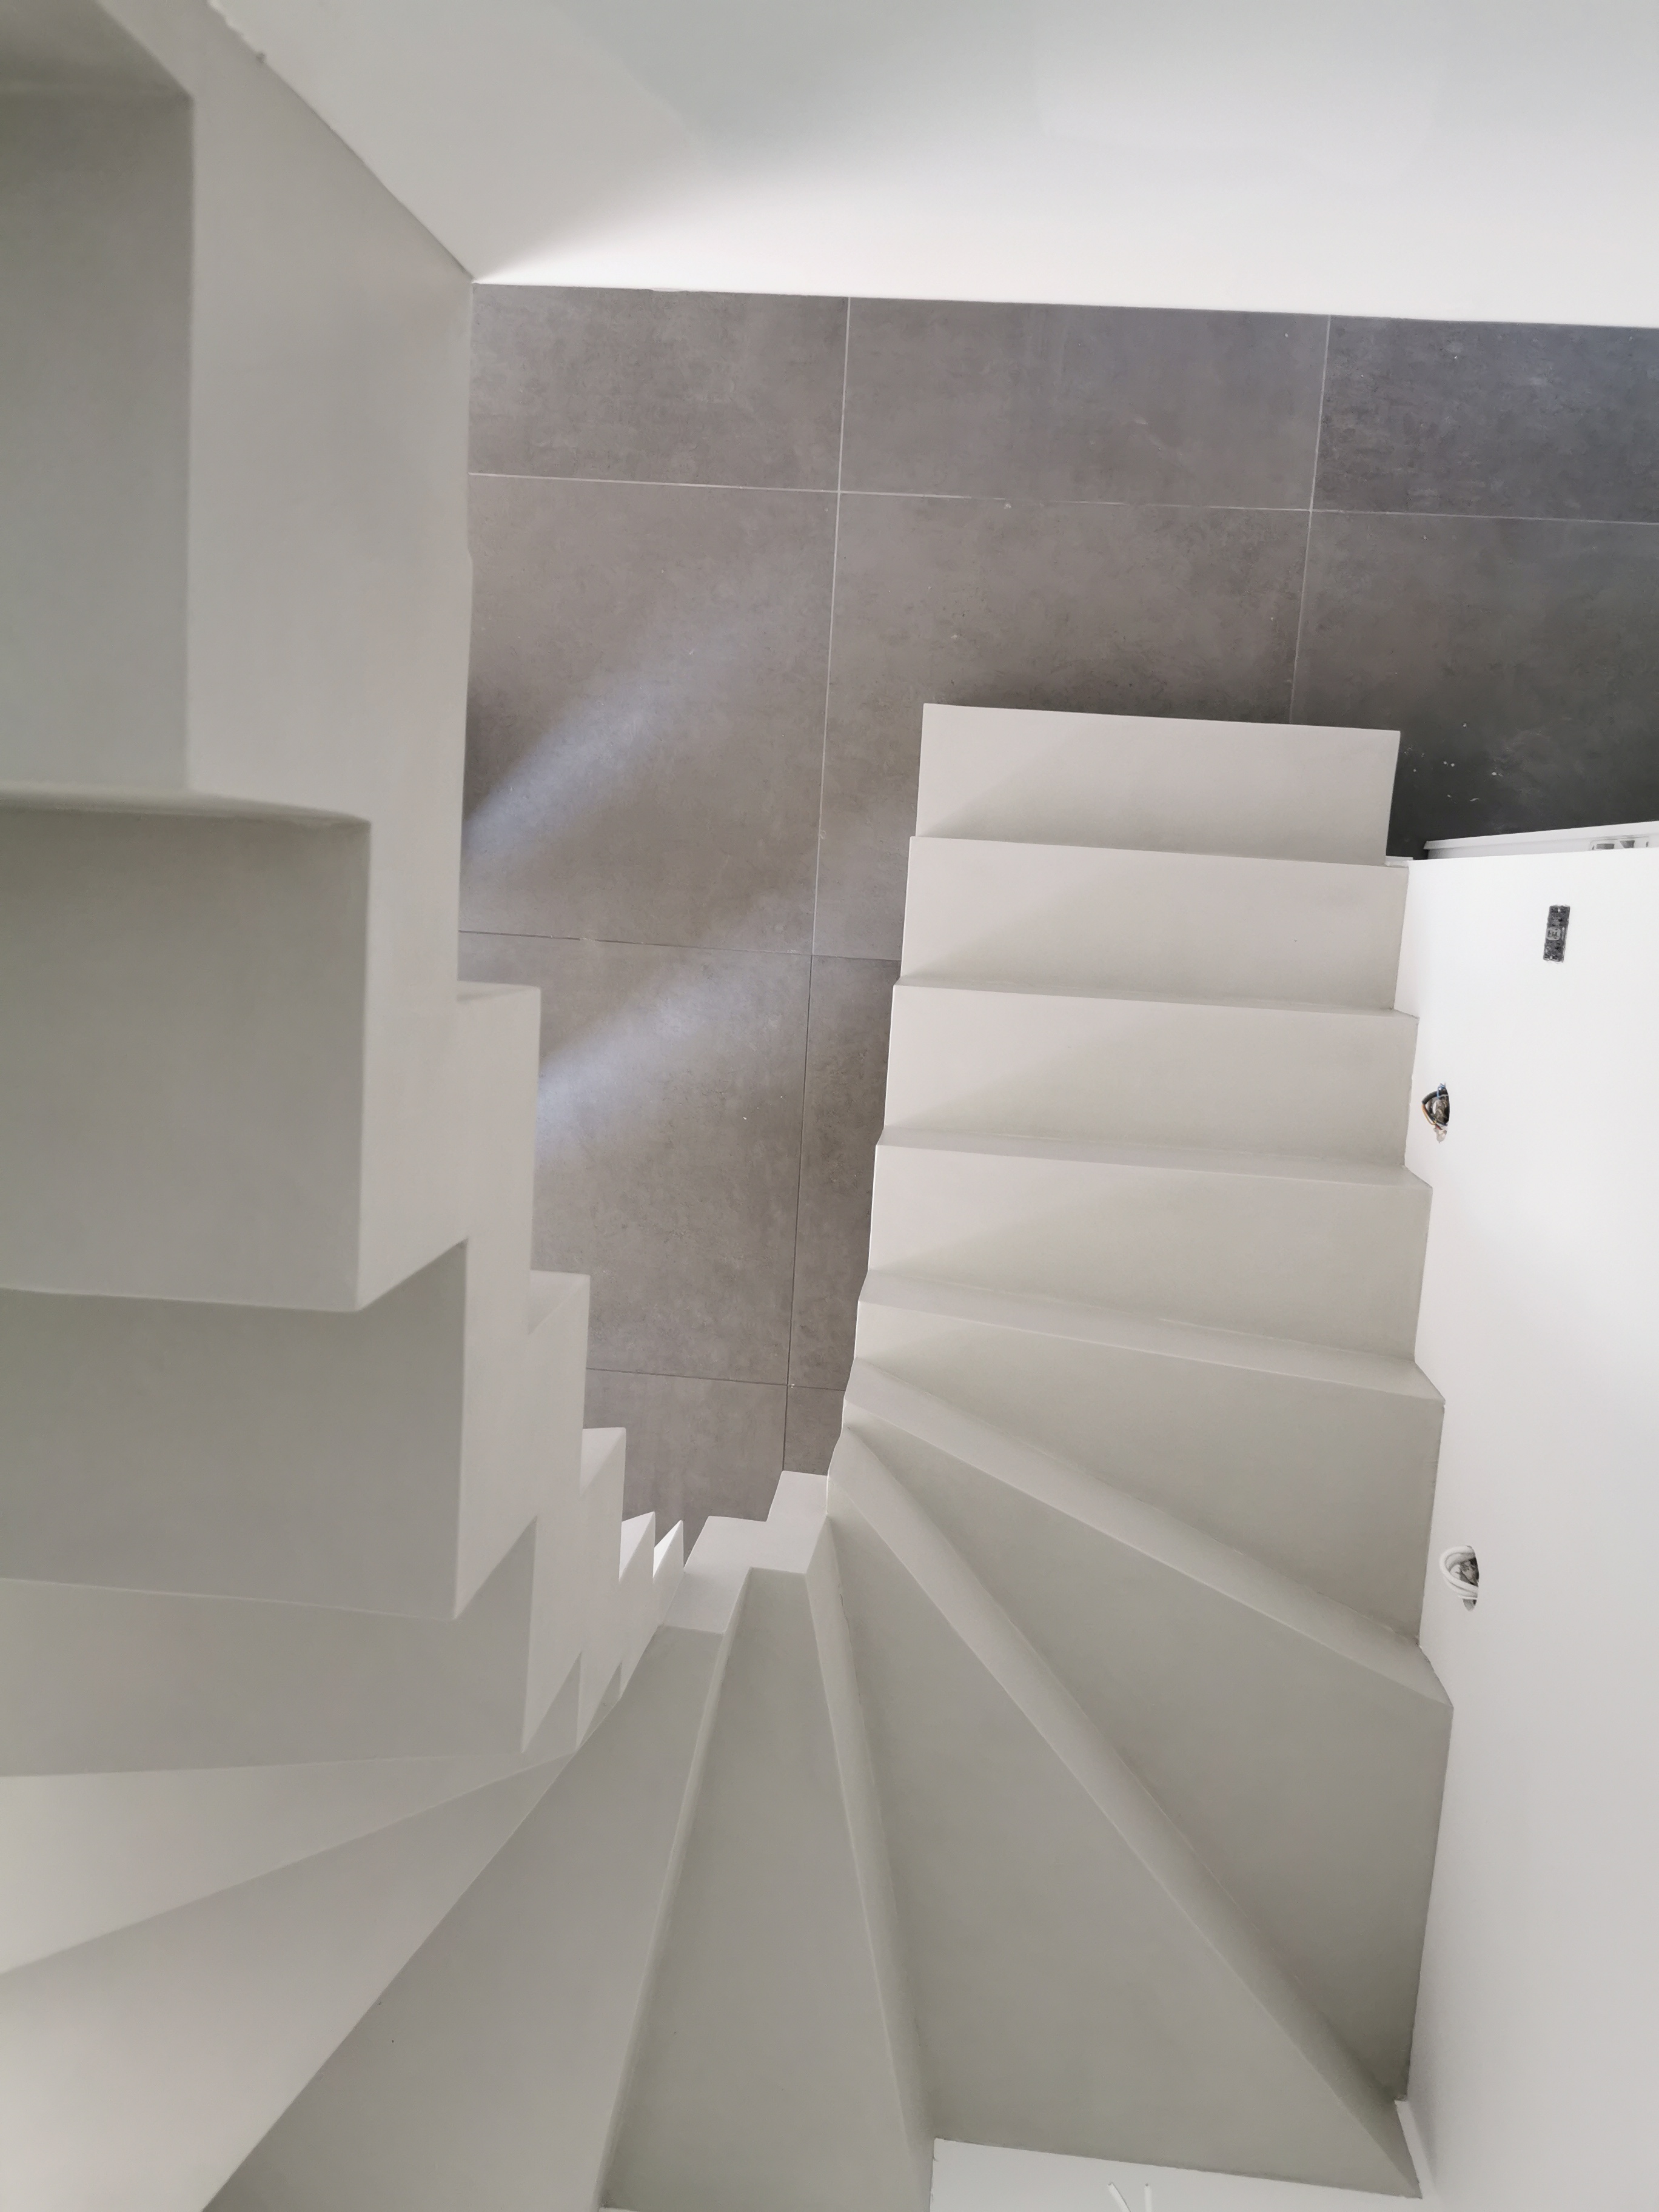 magnifique escalier crémaillère deux quart balancé en béton ciré vernis mat couleur poivre blanc Mérignac à Bordeaux en Gironde en Nouvelle Aquitaine pour un particulier